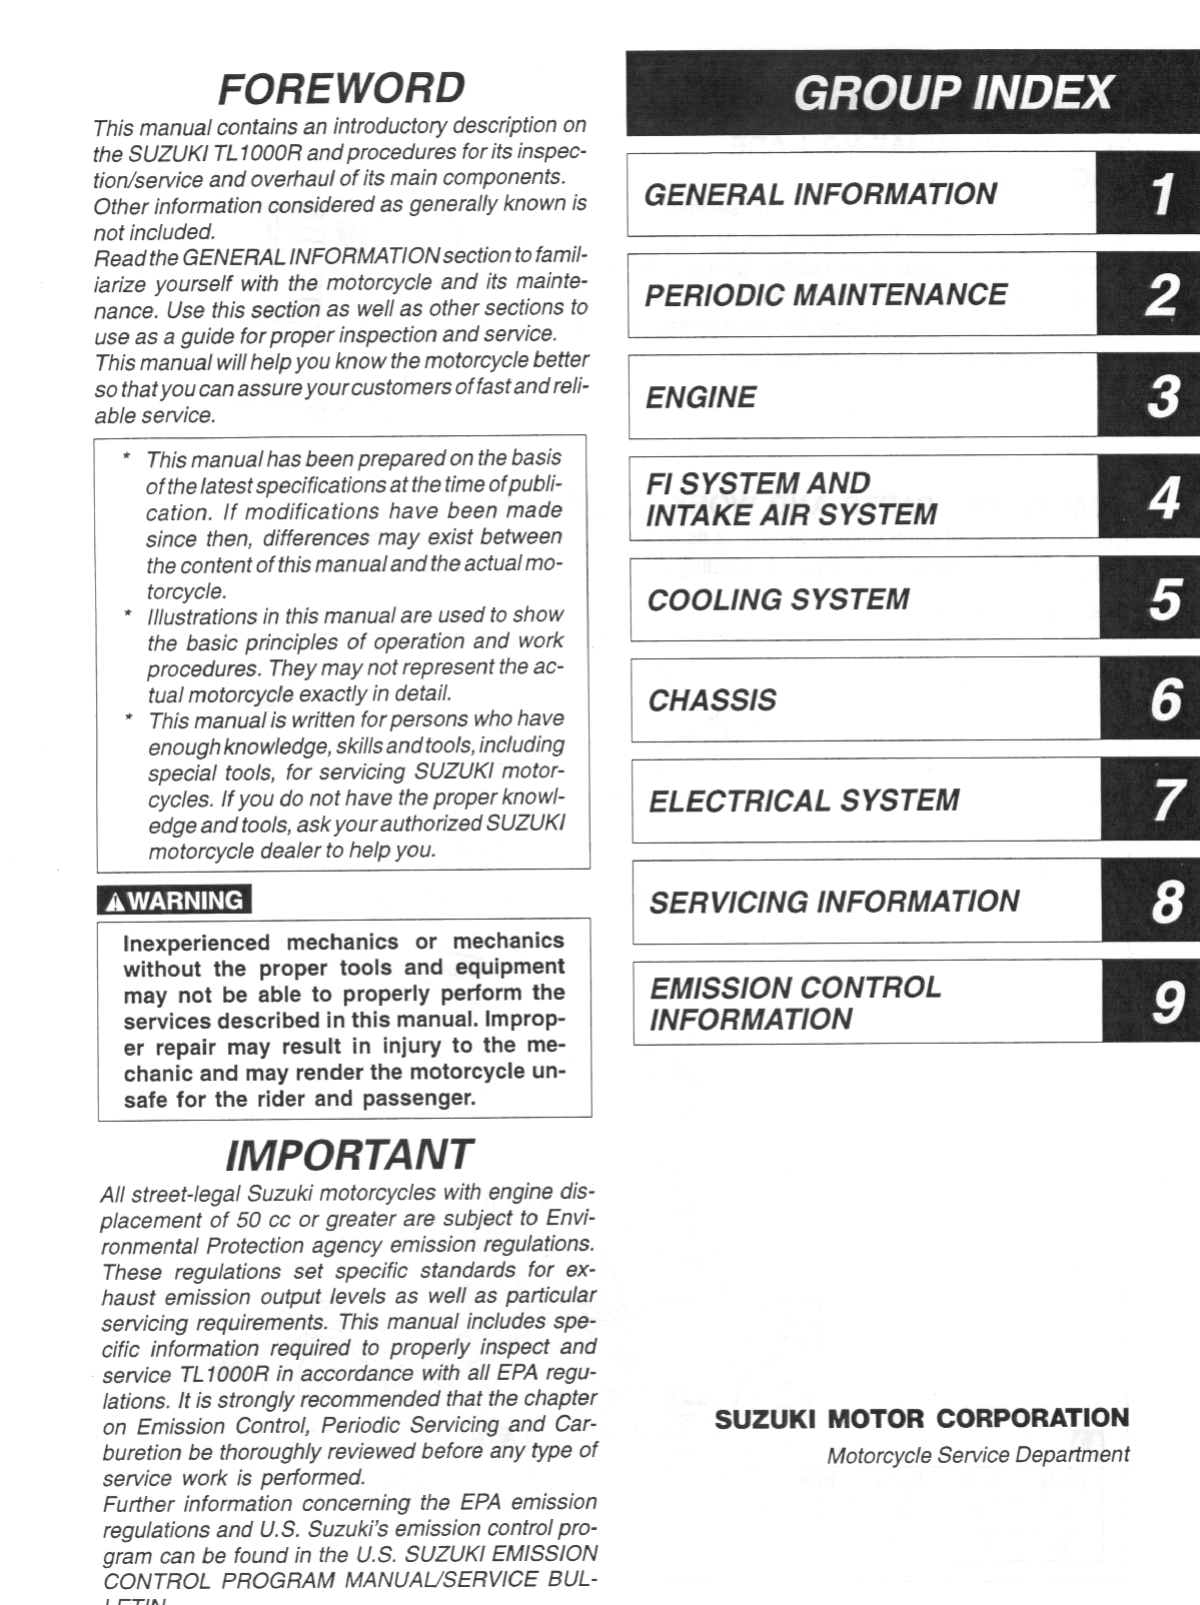 1998-2002 Suzuki TL1000R service manual Preview image 3